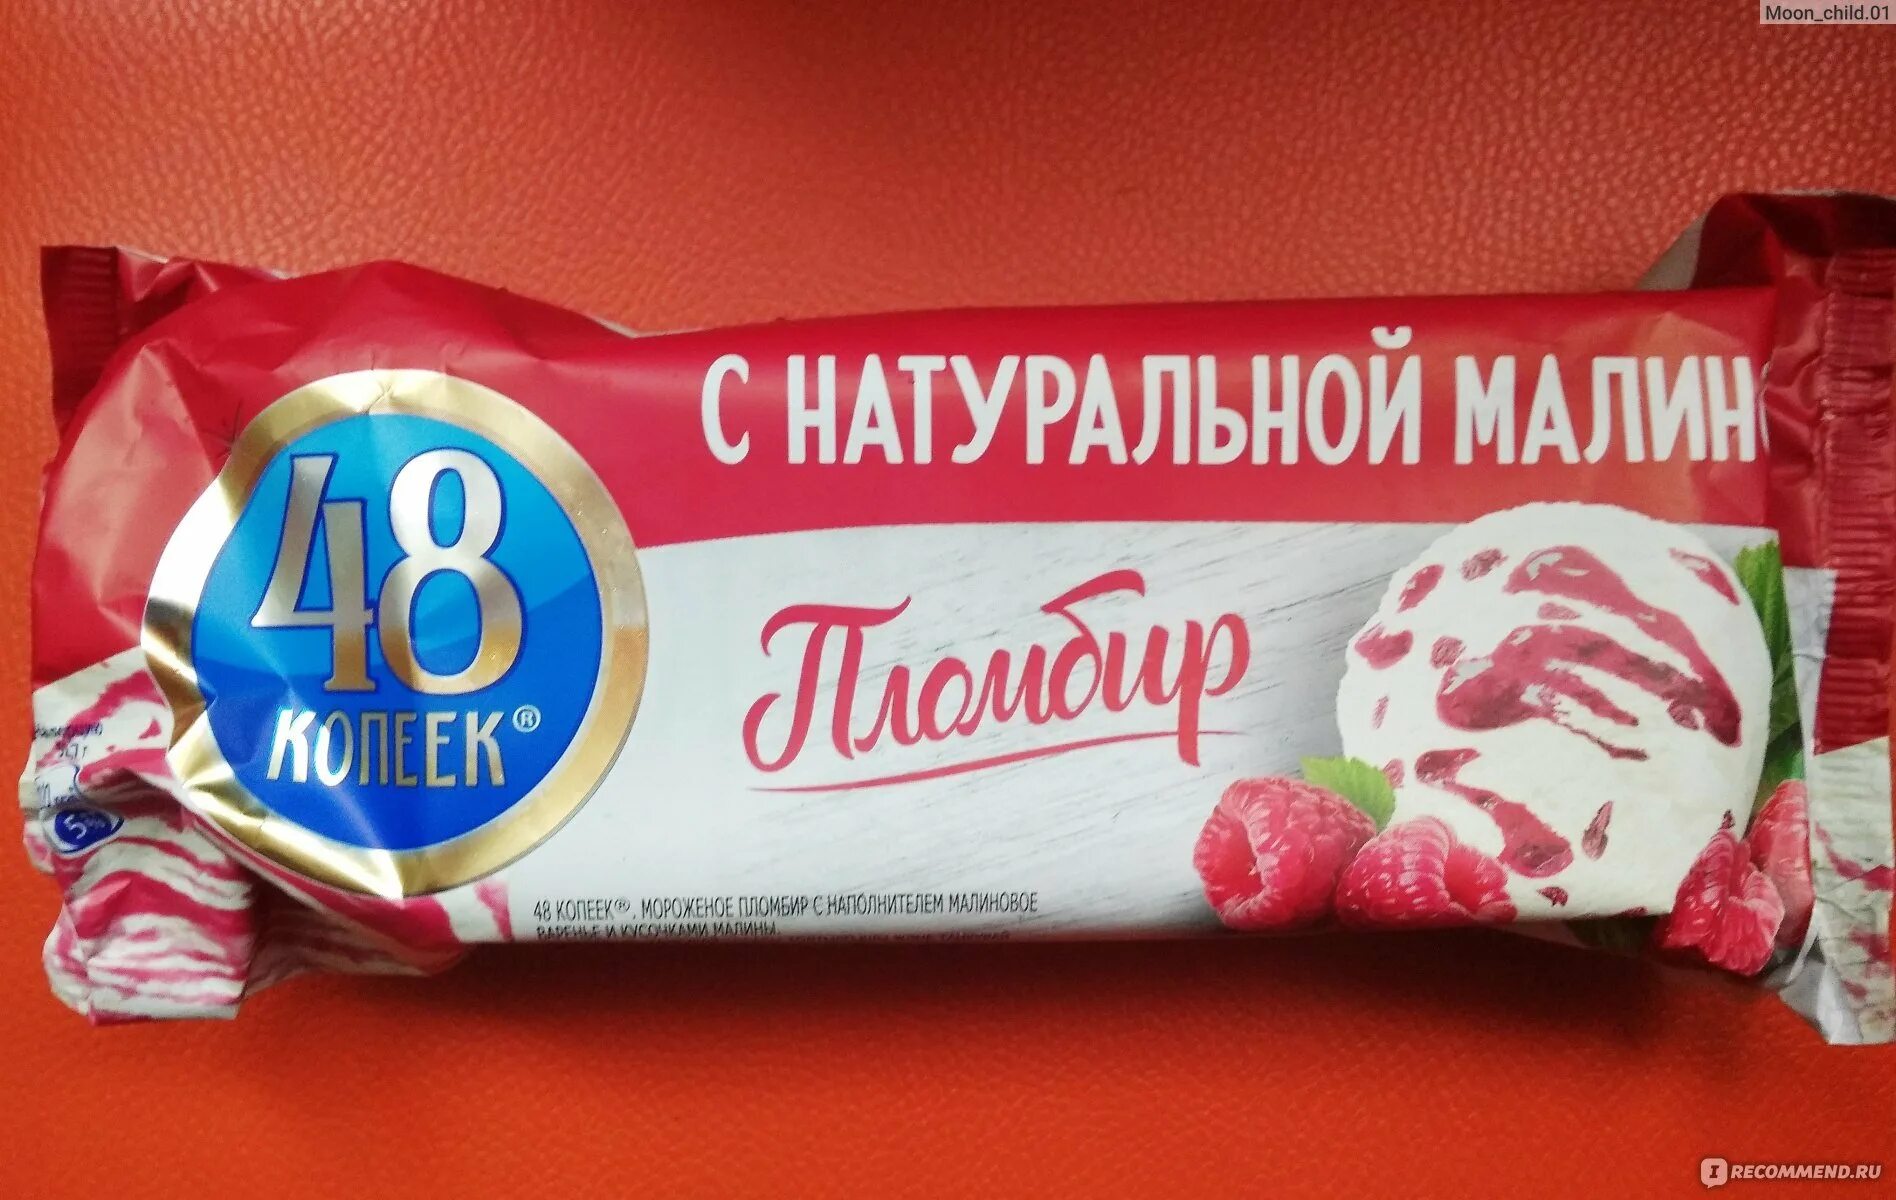 Мороженое в красном и белом. 48 Копеек пломбир малина брикет. Пломбир с розочкой. Пломбир в красной упаковке. Мороженое в красной упаковке.